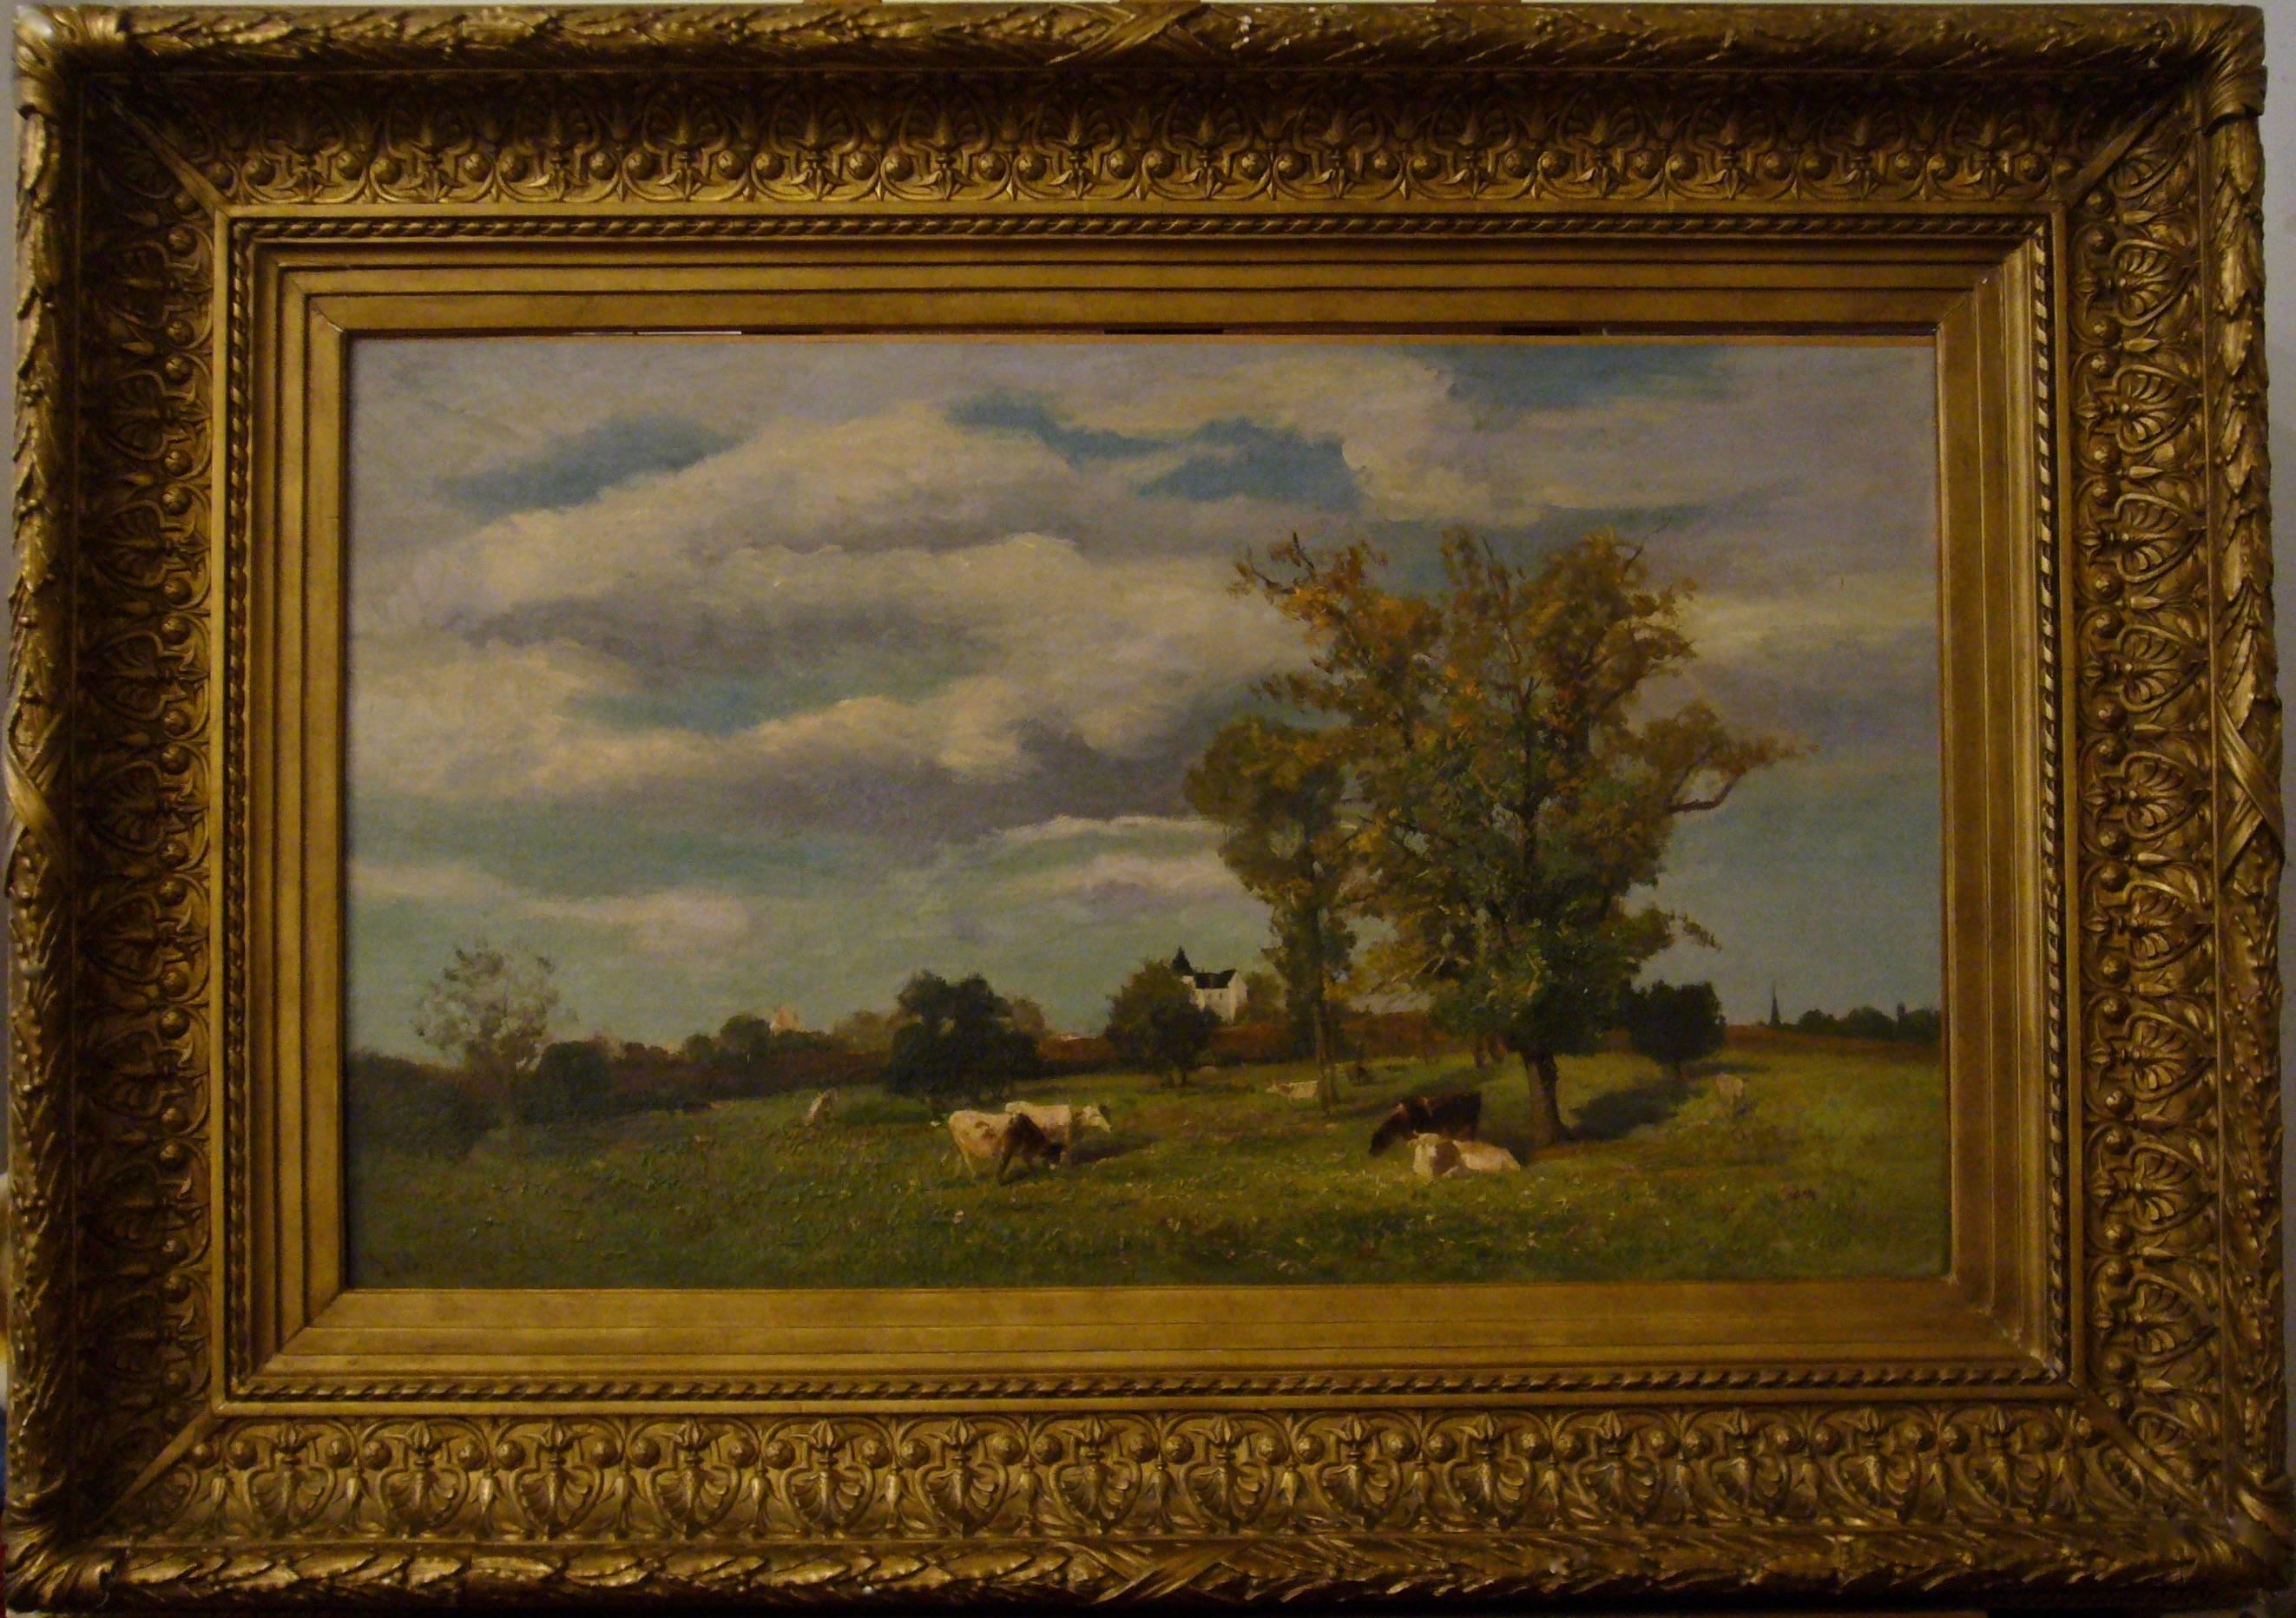 Vaches dans un paysage de printemps près d'un chateau - 19th Century Landscape  - Painting by Jacques Alfred Brielman